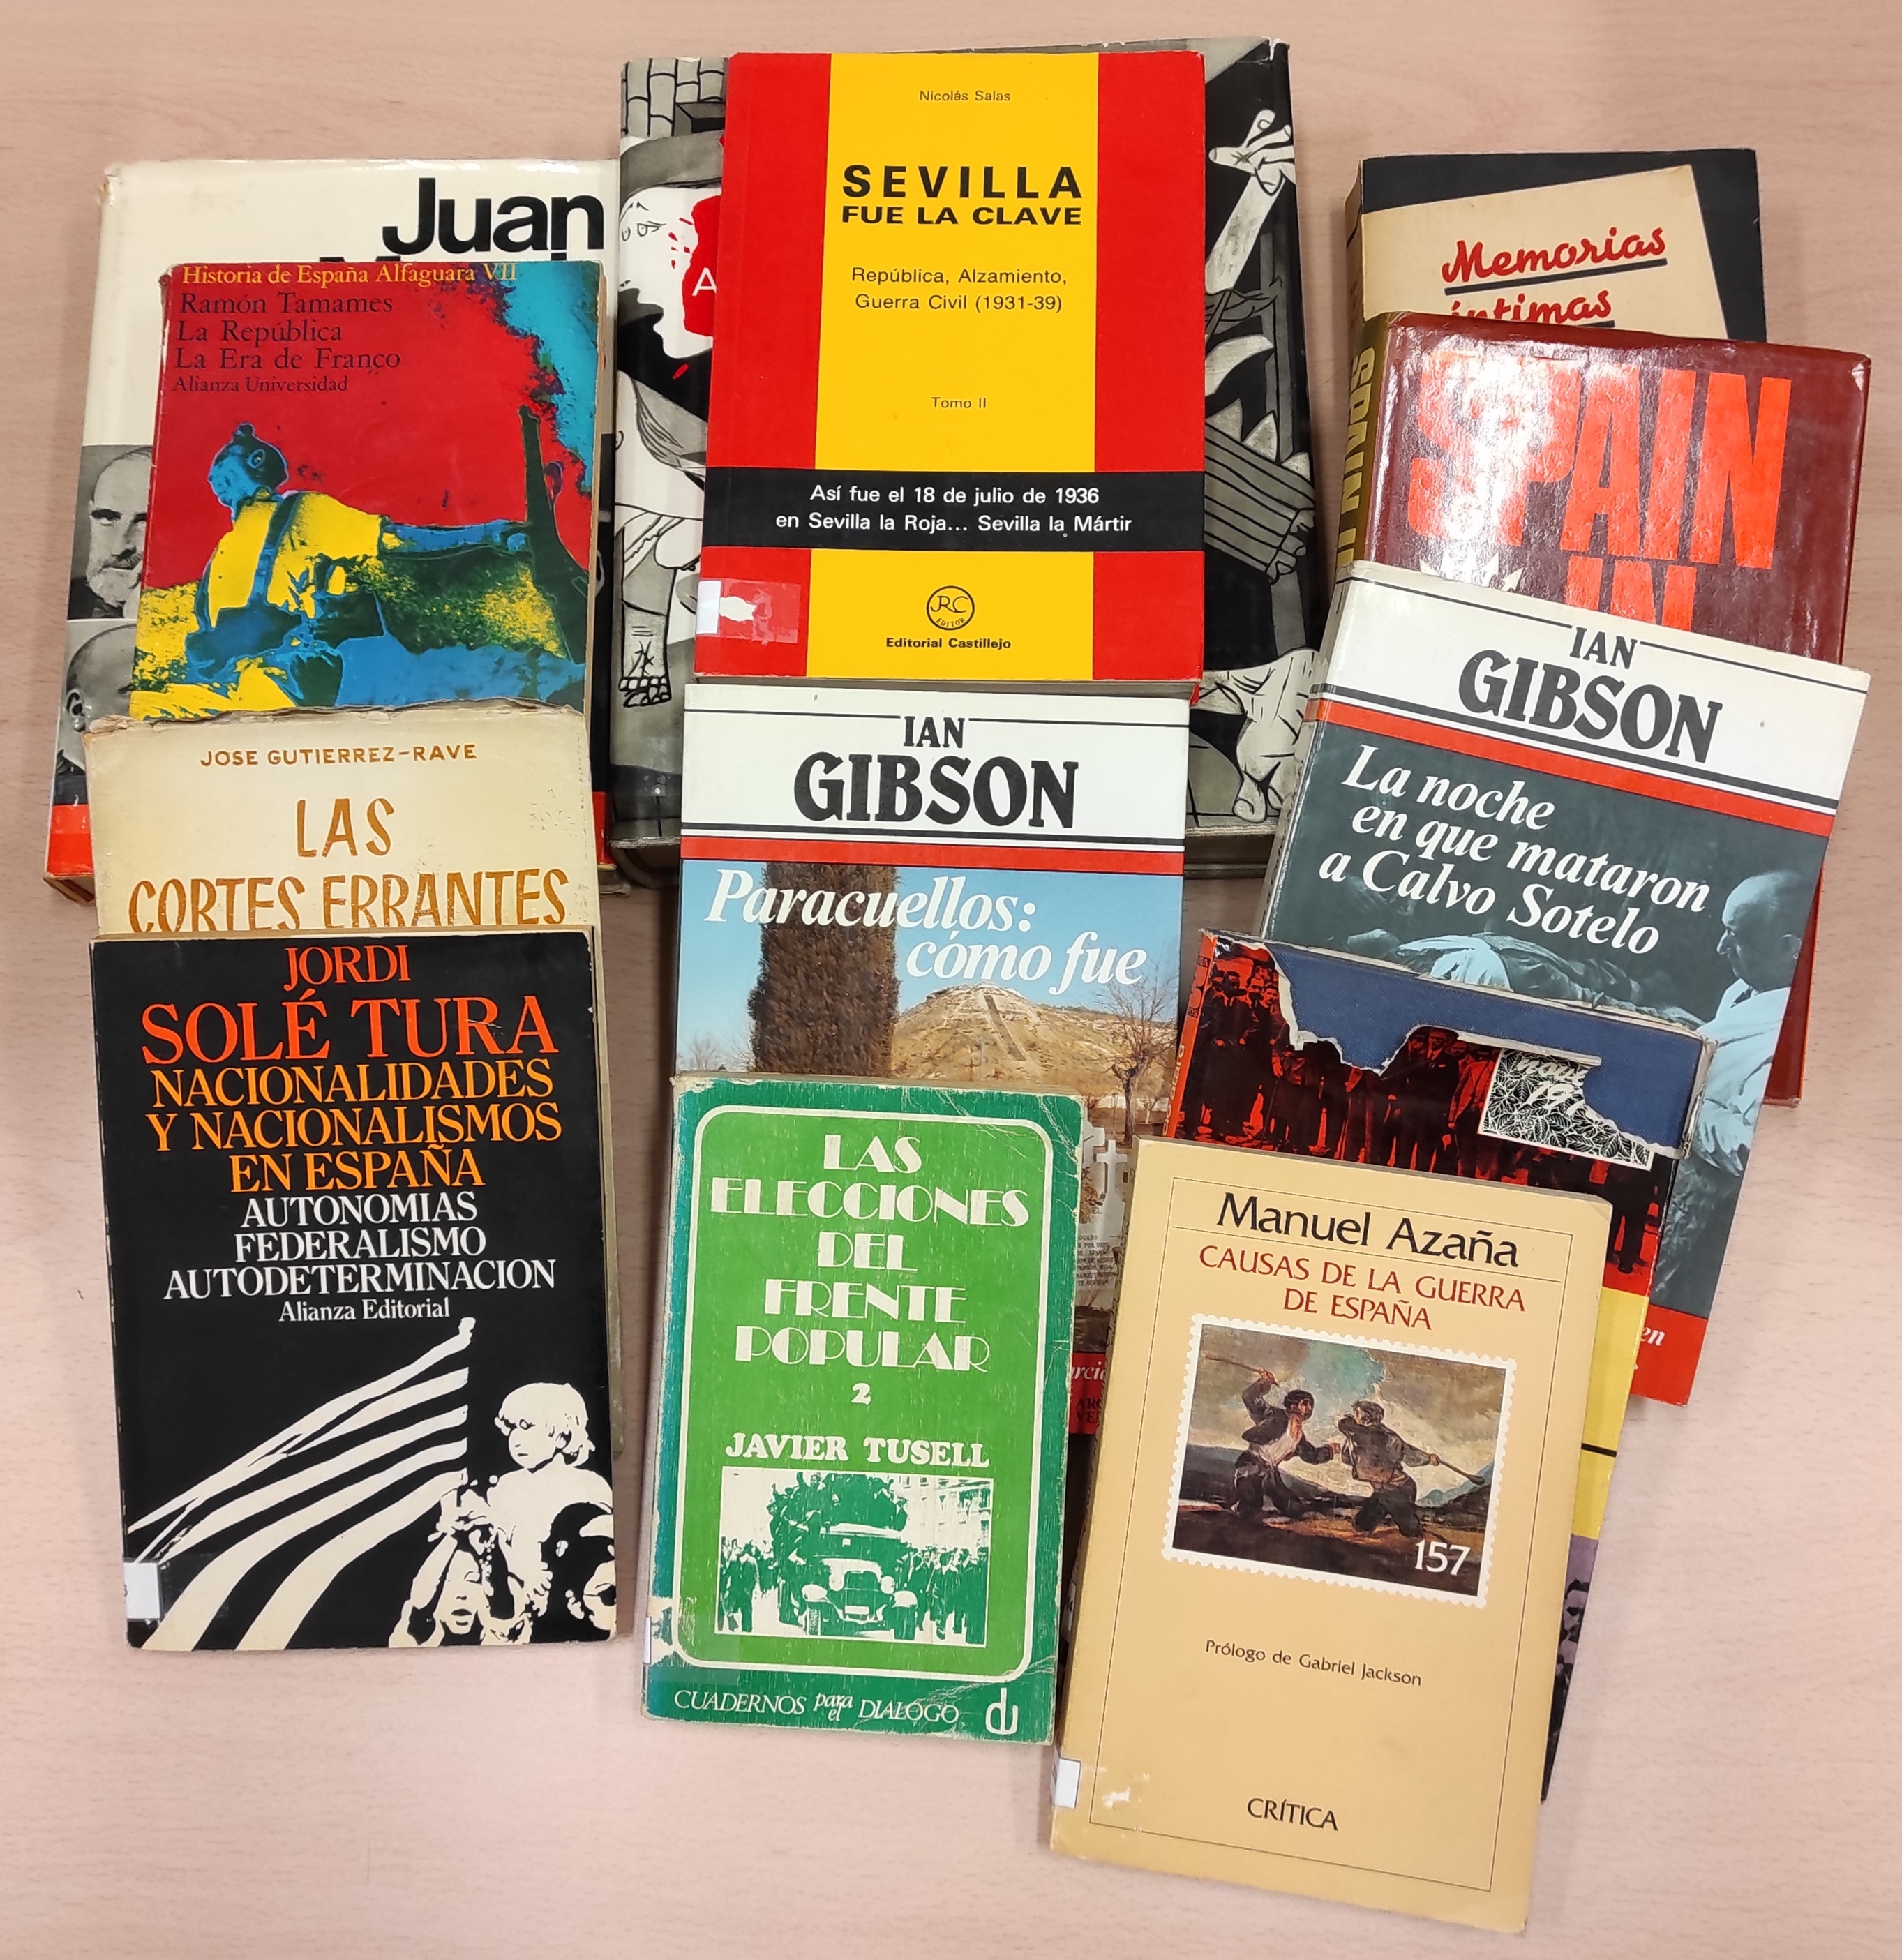 El CRAI Biblioteca del Pabellón de la República (Universitat de Barcelona) ha donado a Fudepa varios libros en concepto de intercambio bibliográfico